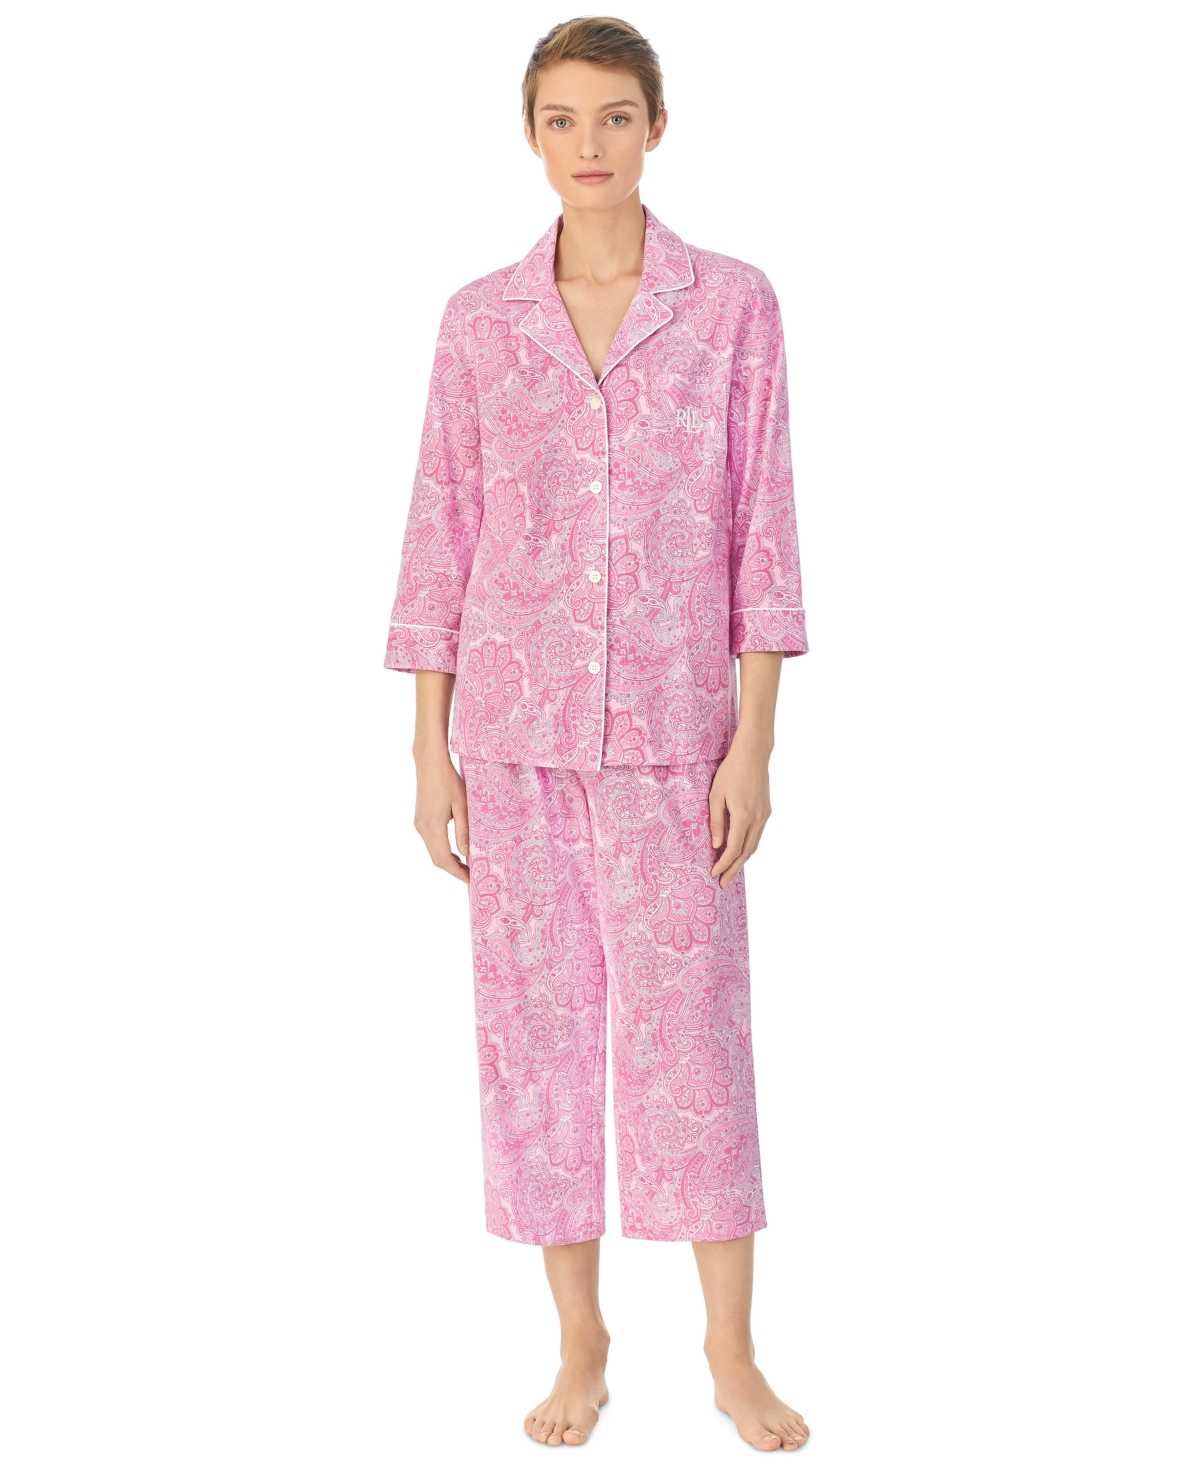 Lauren Ralph Lauren Women's 3/4 Sleeve Notch Collar Long Pants 2 Piece Pajama Set In Pink Paisley